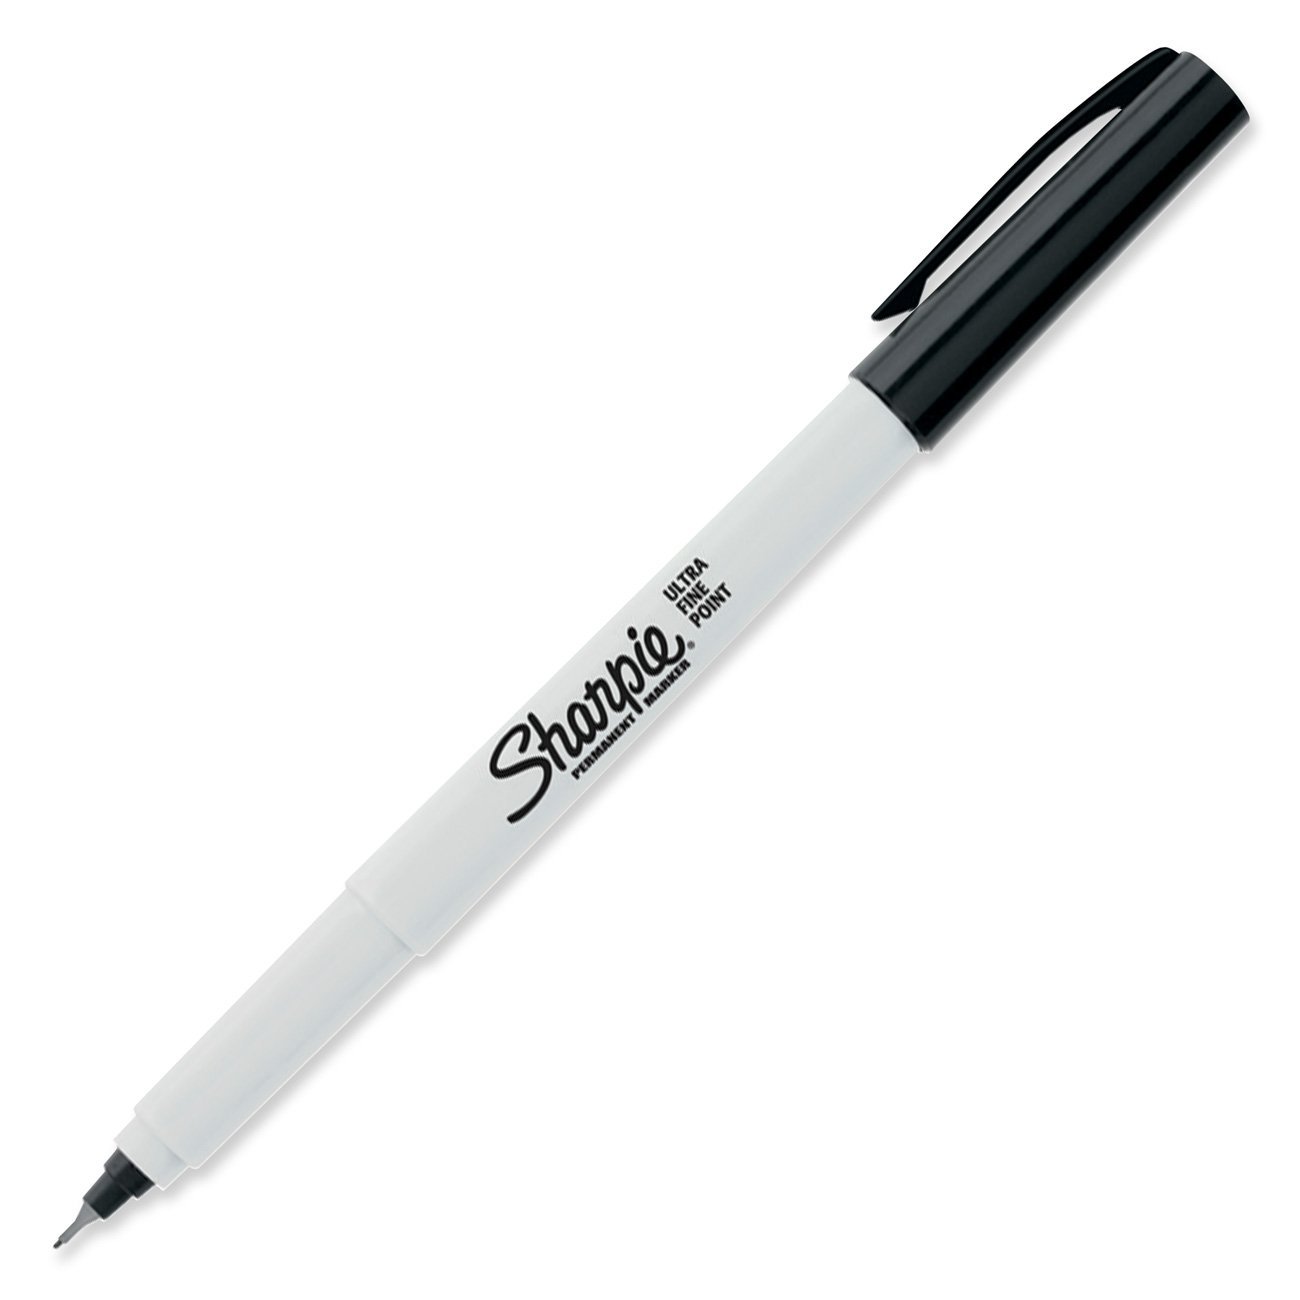 Sharpie-Pen-Ultra-Fine-Point-Permanent-Marker.jpg